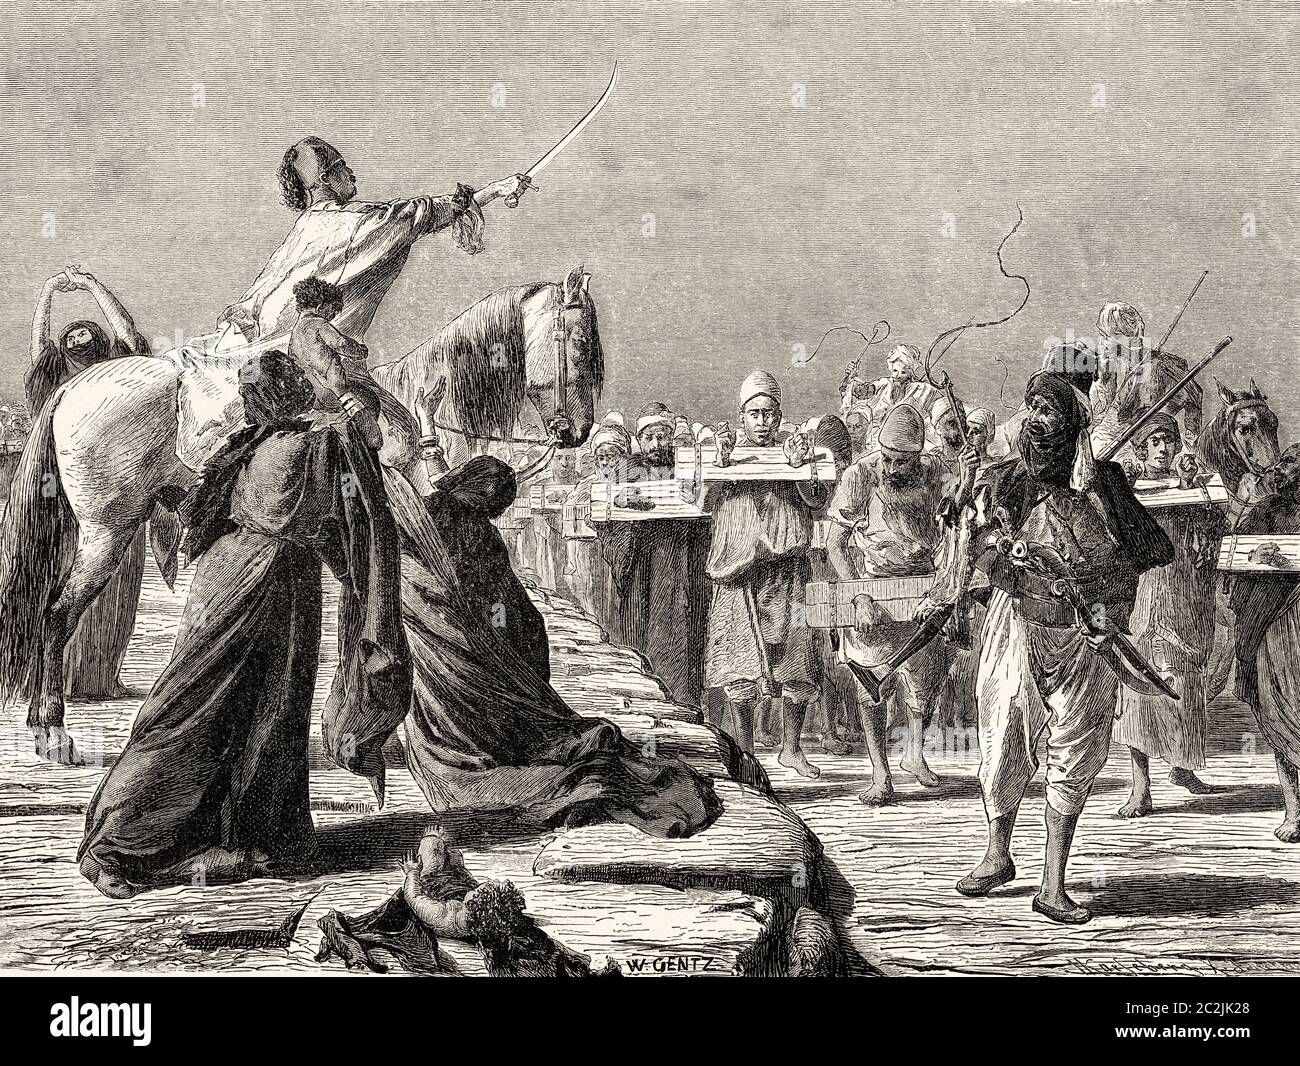 Escena de Reclutamiento bajo Mohammed-Ali. Antiguo siglo XIX grabado ilustración, el Mundo ilustrado 1880 Foto de stock